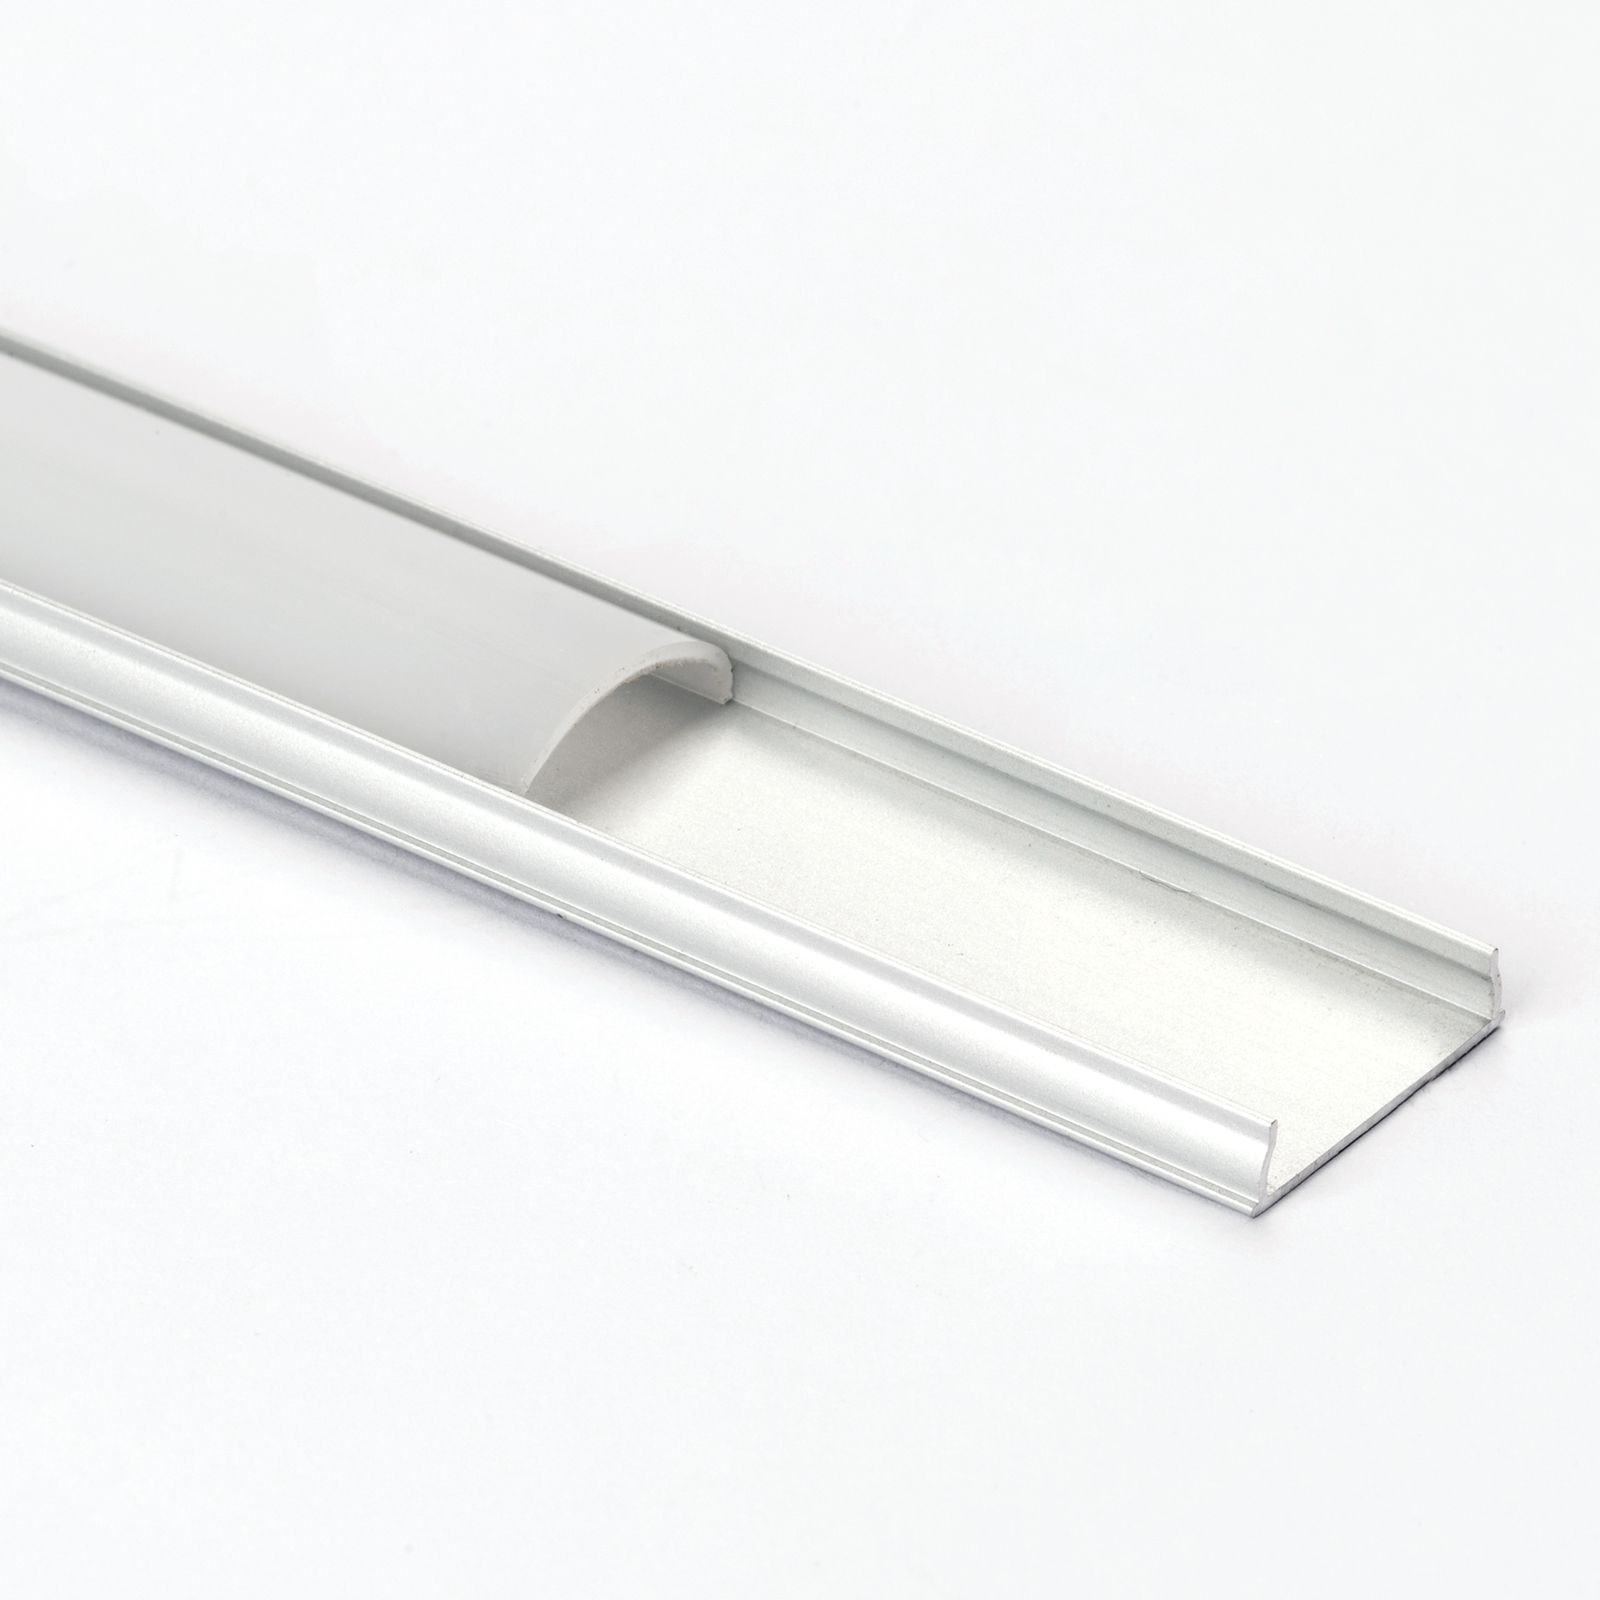 TRANSPARENT - Profile aluminium LED 100 cm EINBAU GROSS + Couvercle  transparent pour bande LED